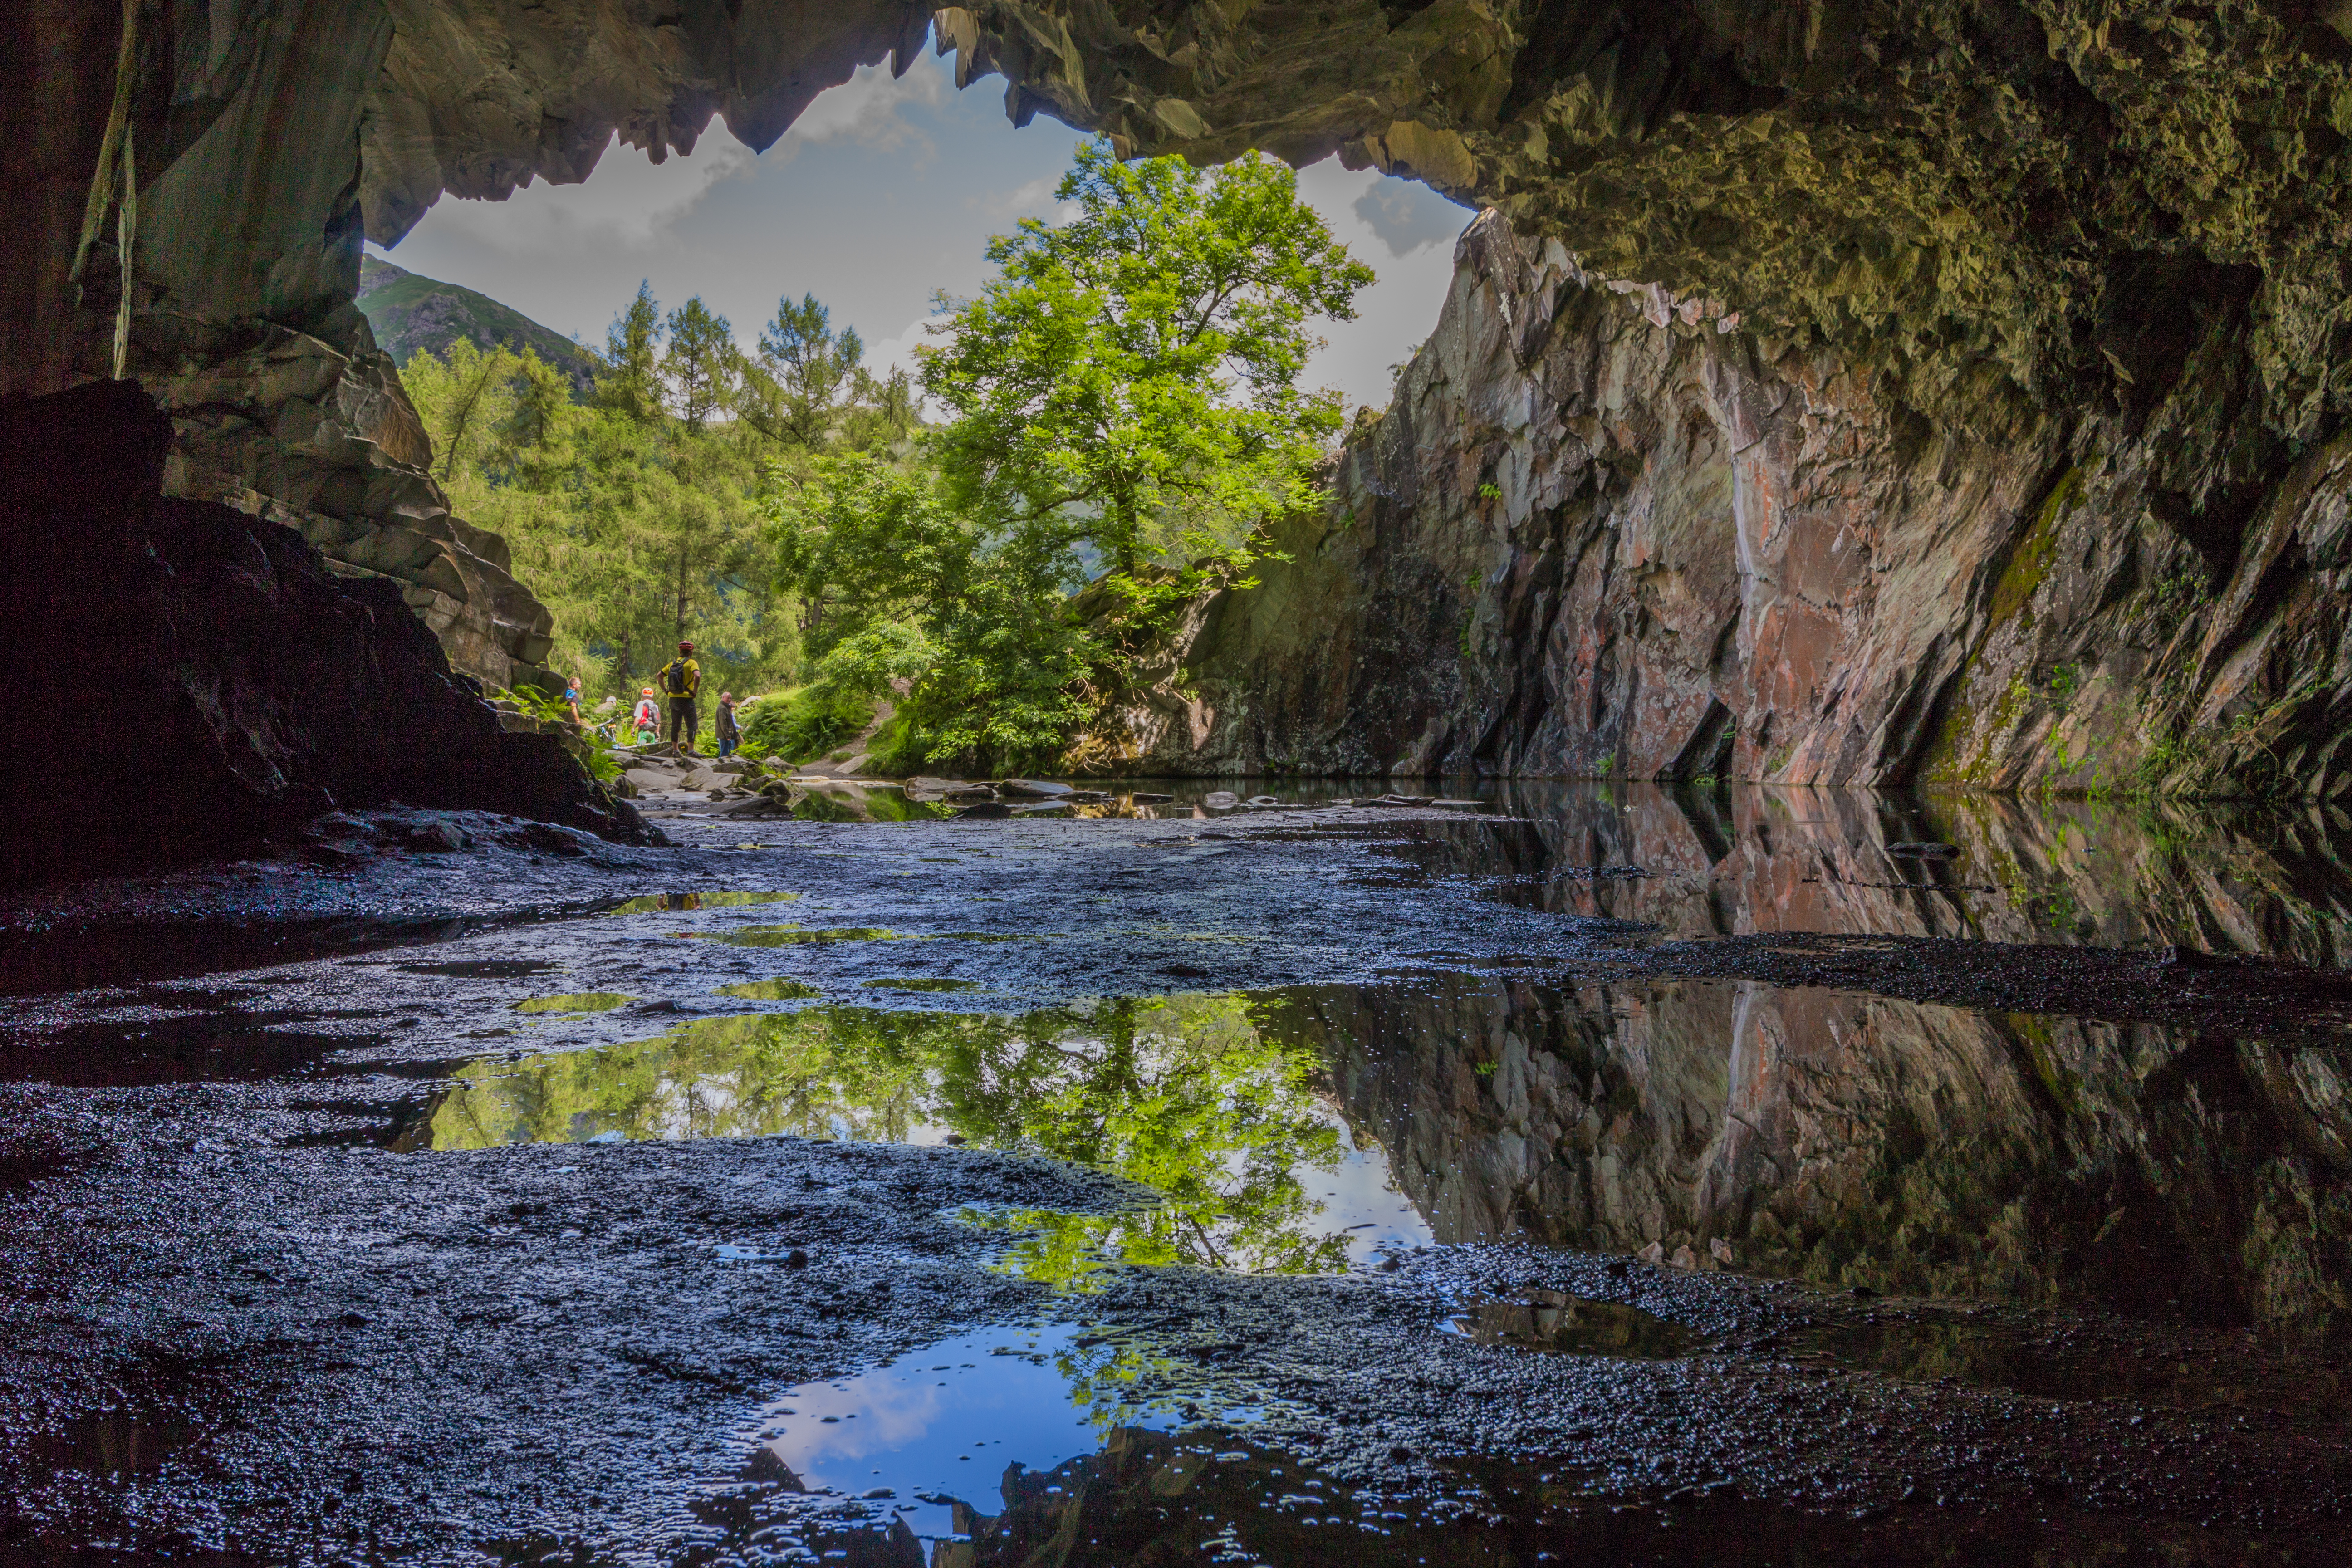 Rydal-Höhlen wurden als beschrieben "wirklich schöner Fund"